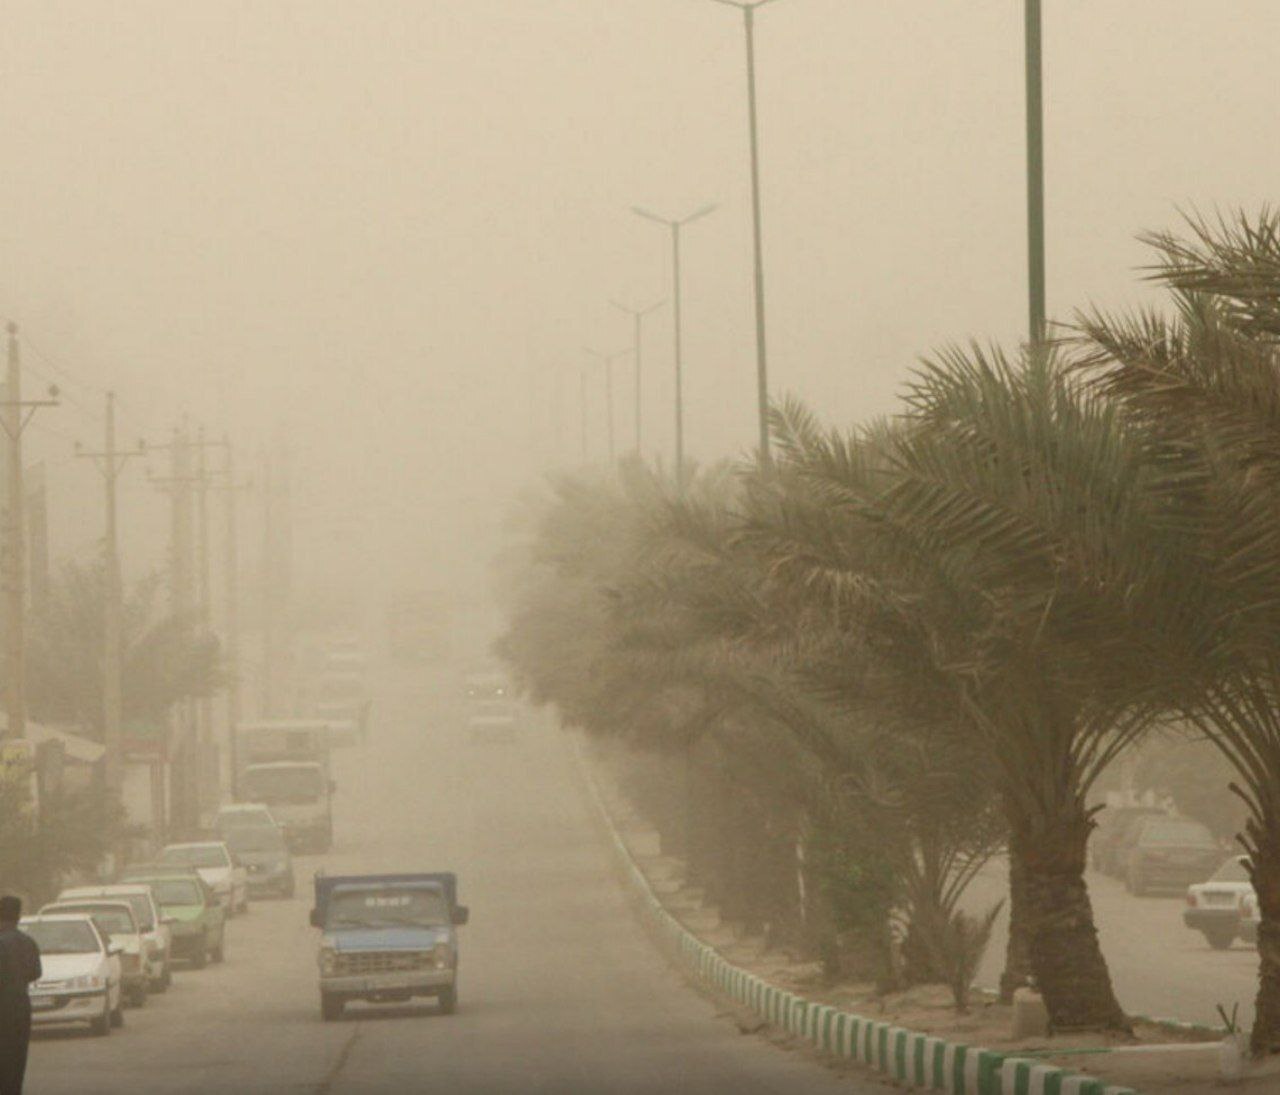 پیش بینی وقوع گرد و غبار محلی و کاهش دما در خوزستان